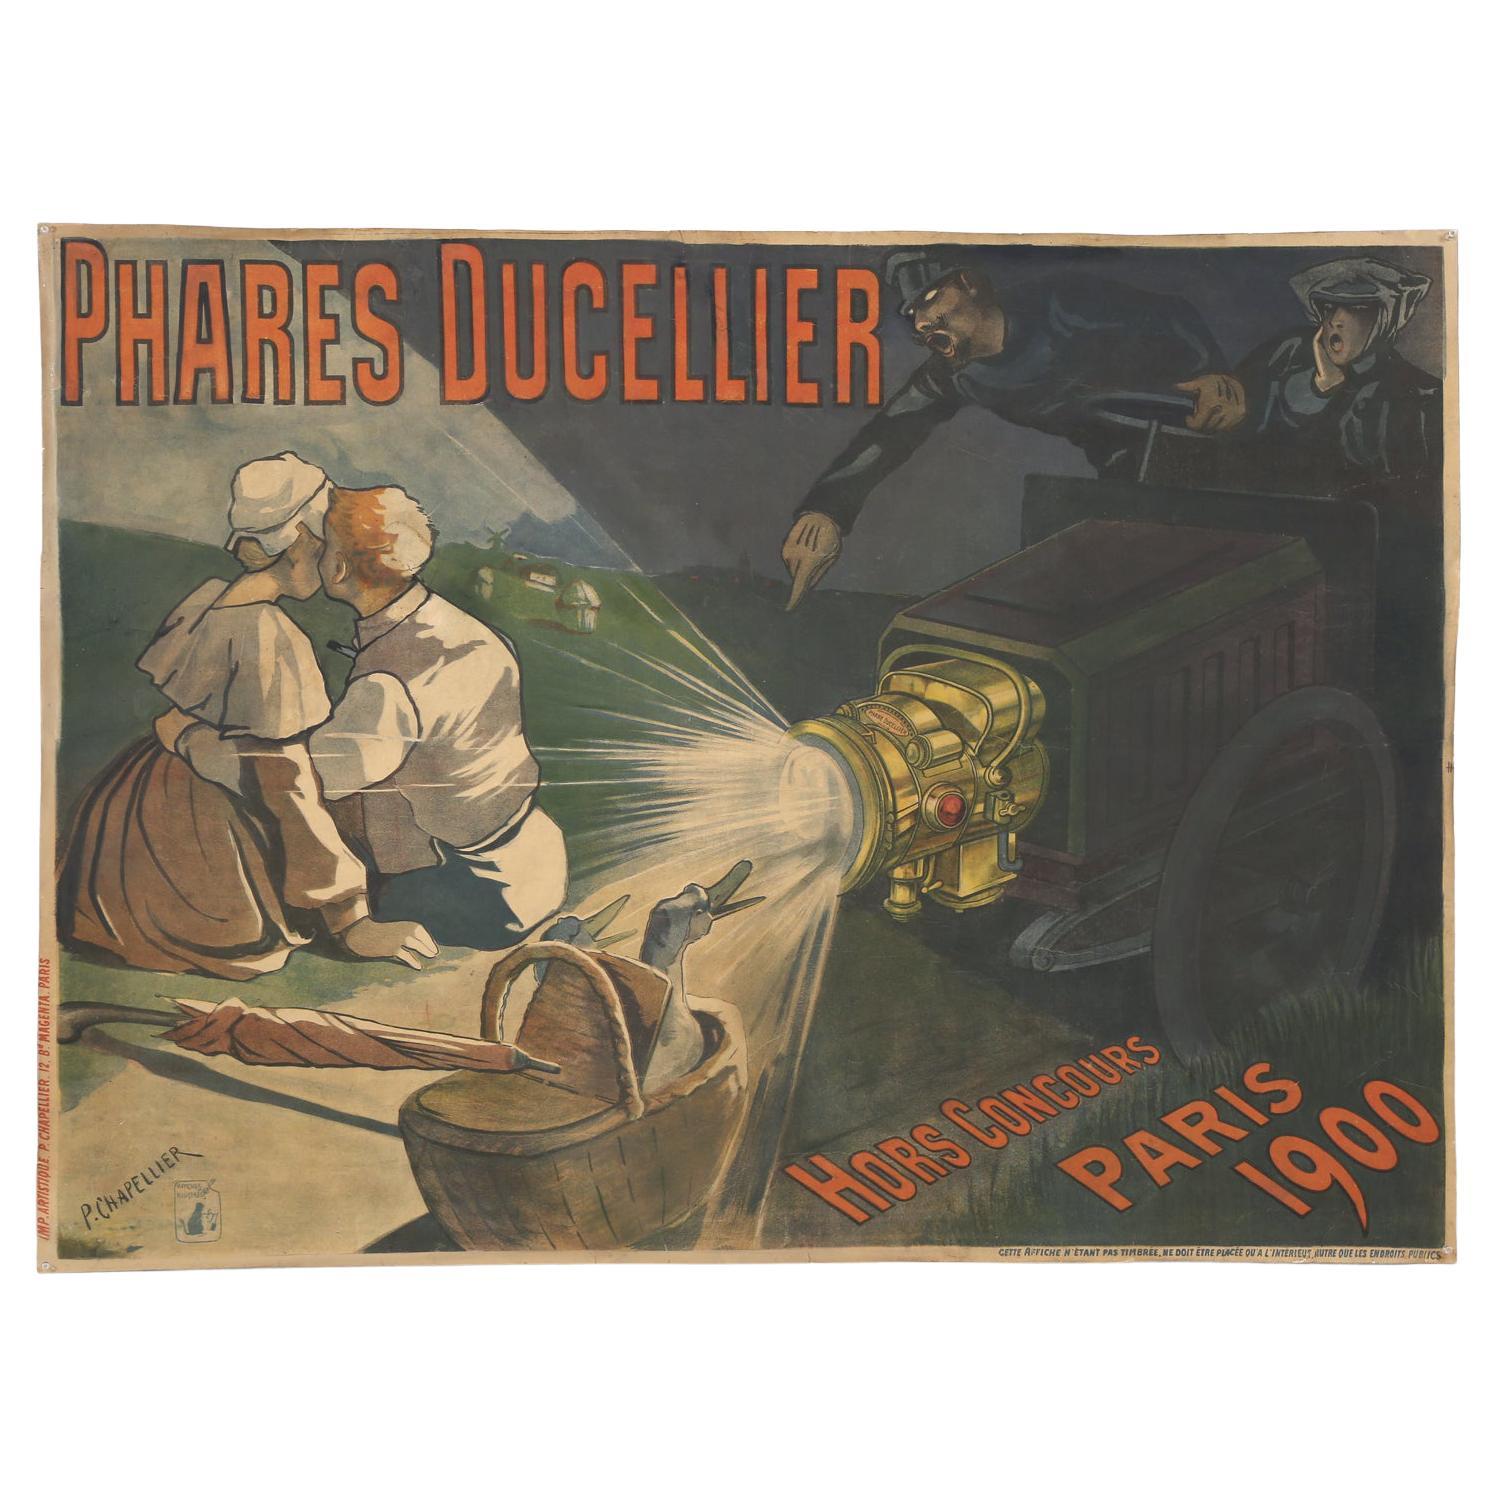 Phares Ducellier Large Original Poster by P. Chappelier, Paris France, 1900